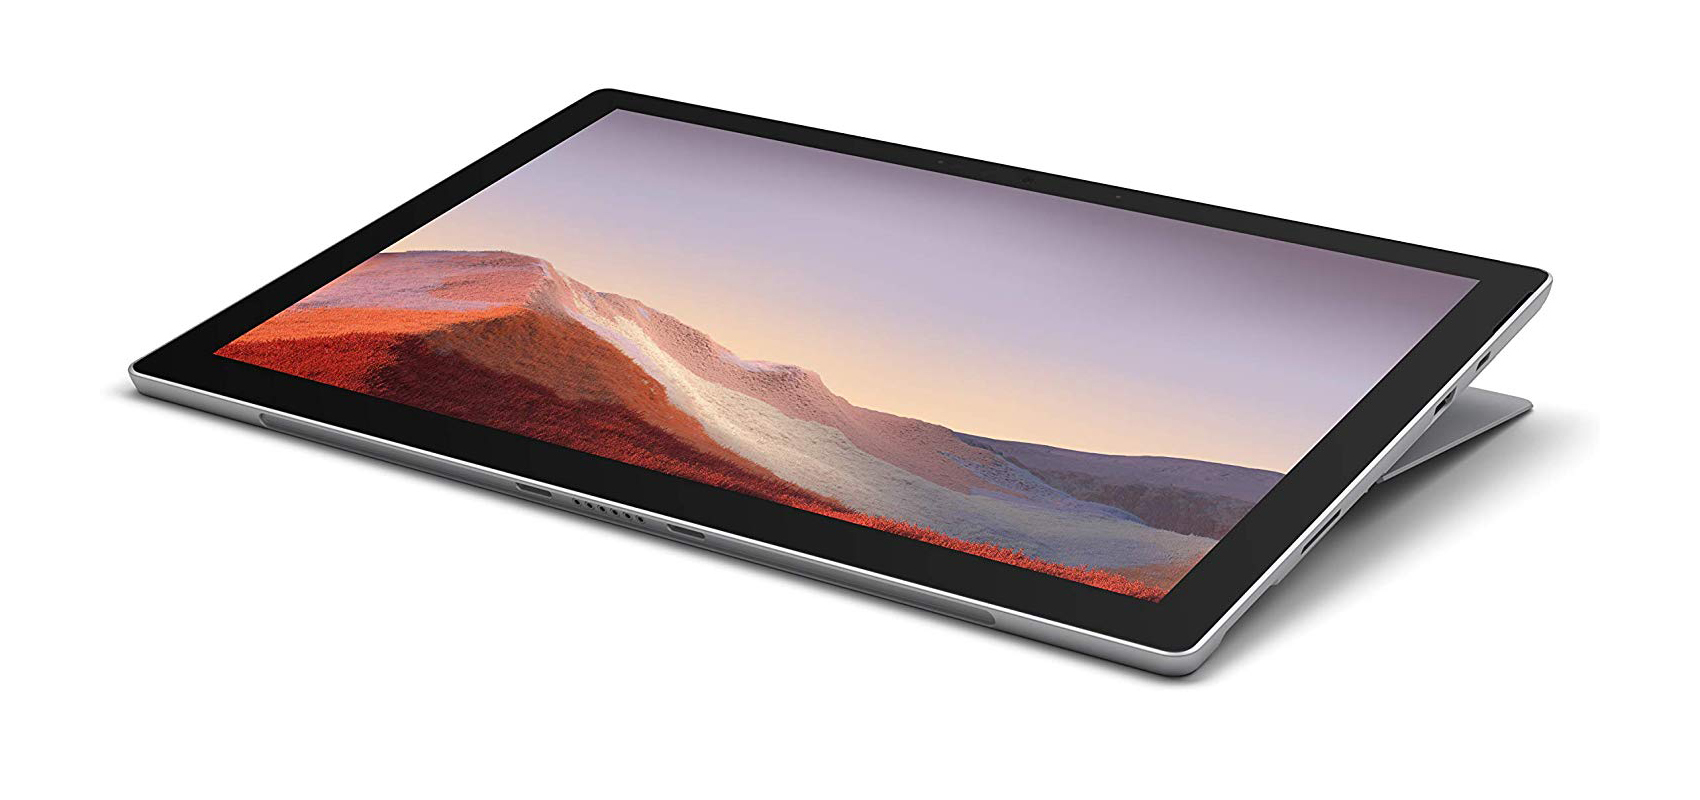 جهاز Microsoft Surface Pro 7 بالمعالج i5-1035G4/ ذاكرة الوصول العشوائي 8 جيجابايت/محرك أقراص صلبة من النوع SSD سعة 128 جيجابايت/بلاتيني + غطاء أسود